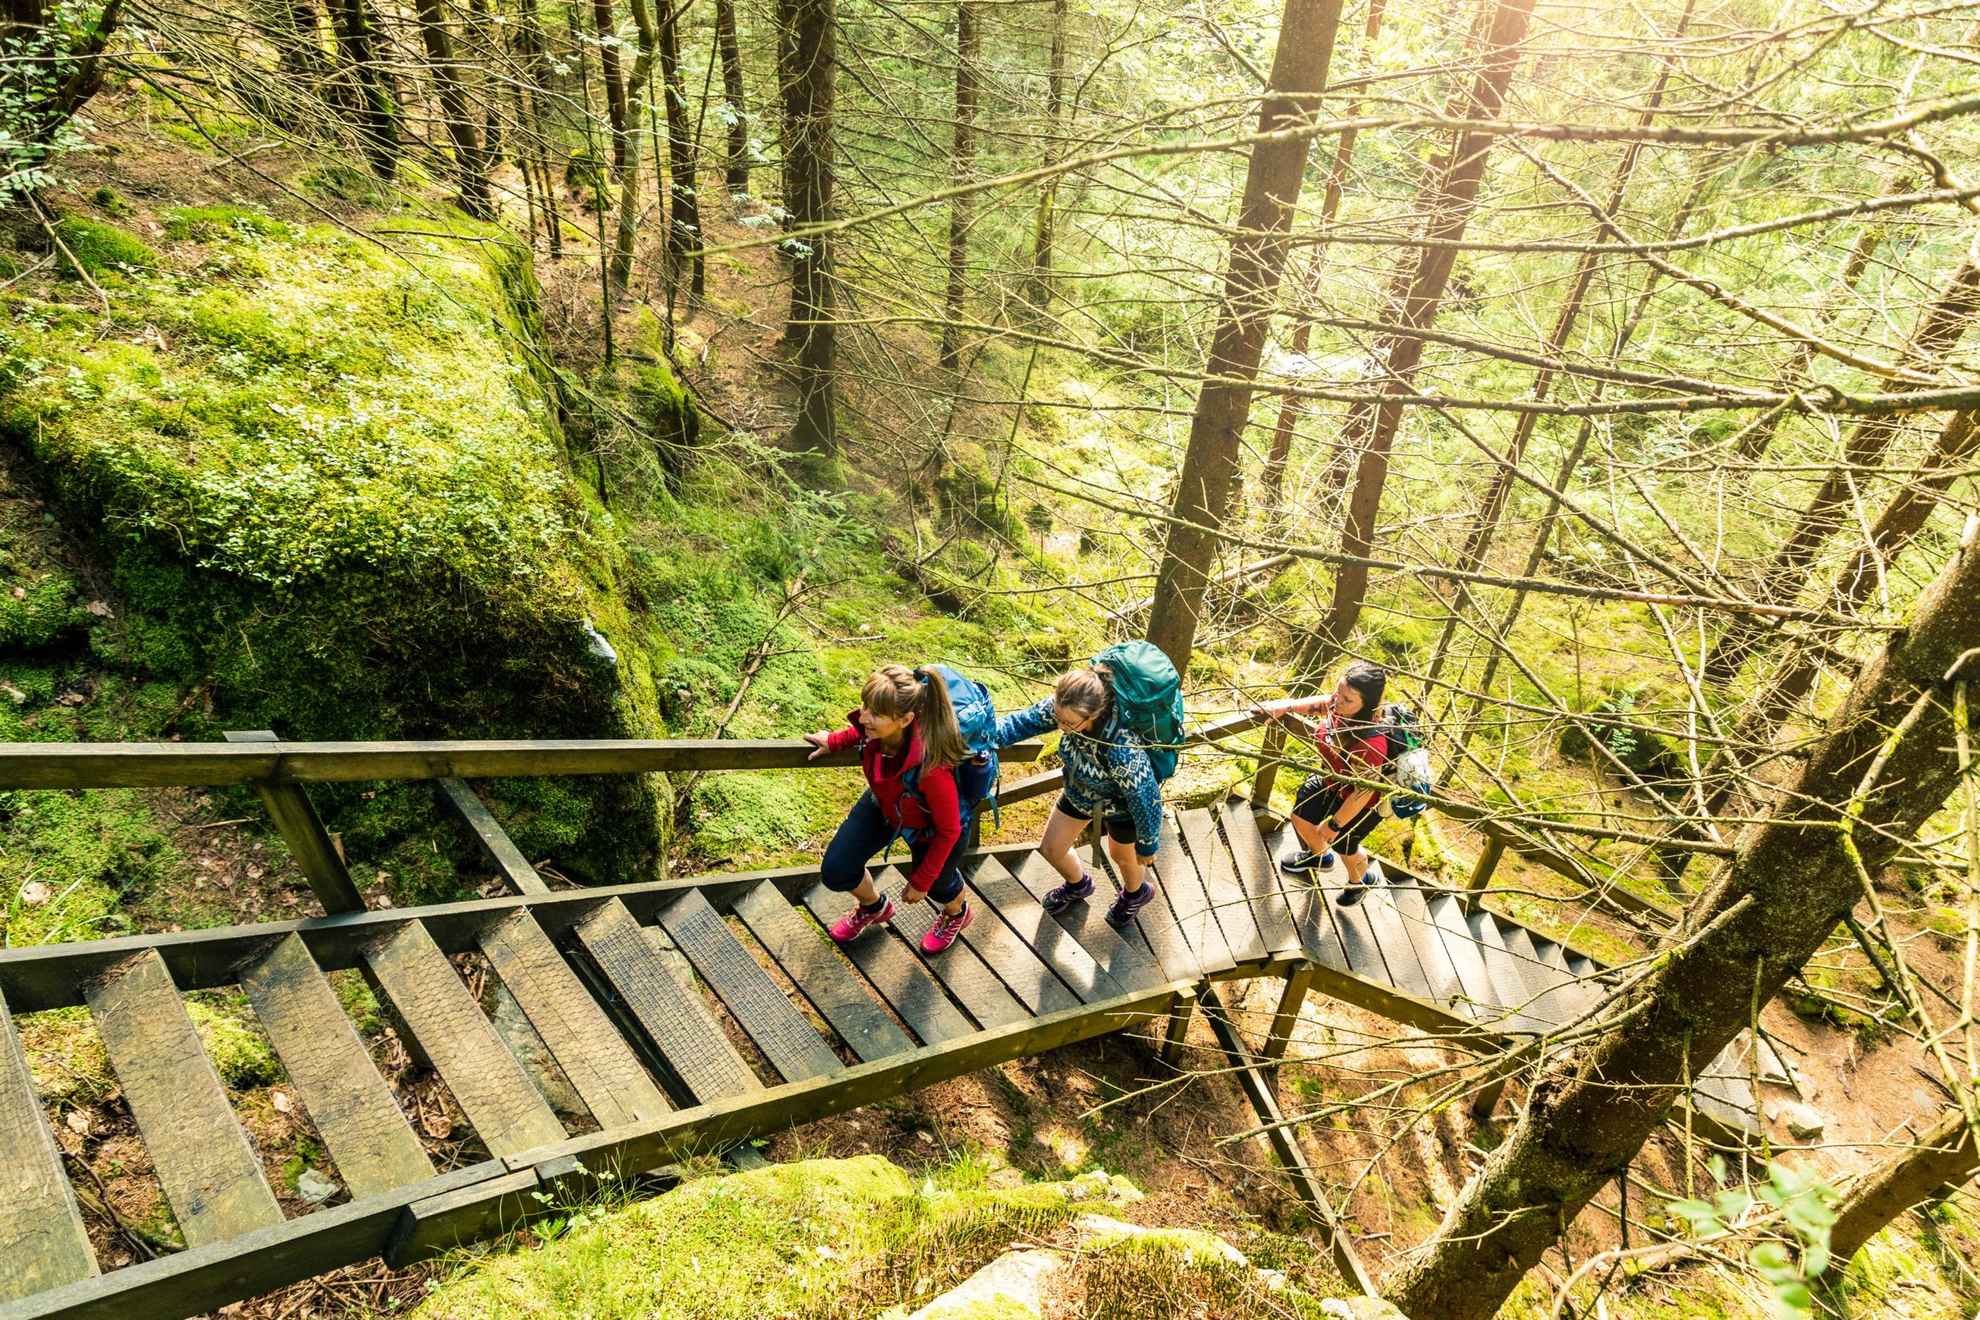 Trois personnes avec des sacs à dos montent un escalier extérieur en bois dans une forêt.